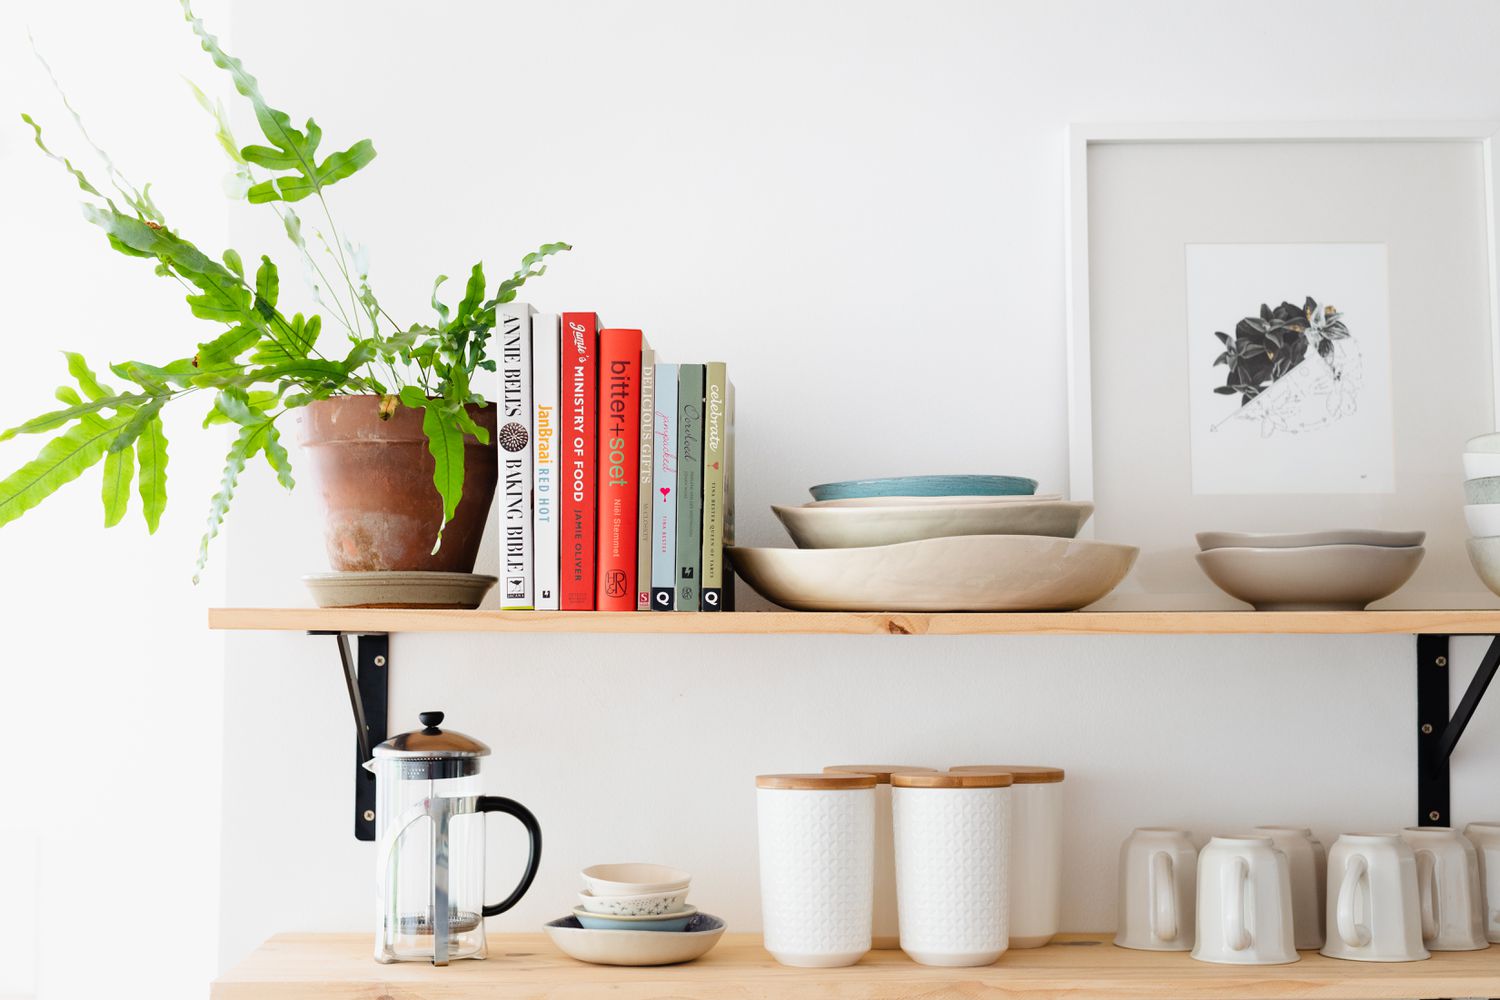 Étagères en bois présentant des livres de cuisine et une plante d'intérieur à côté d'ustensiles de cuisine et d'une cafetière